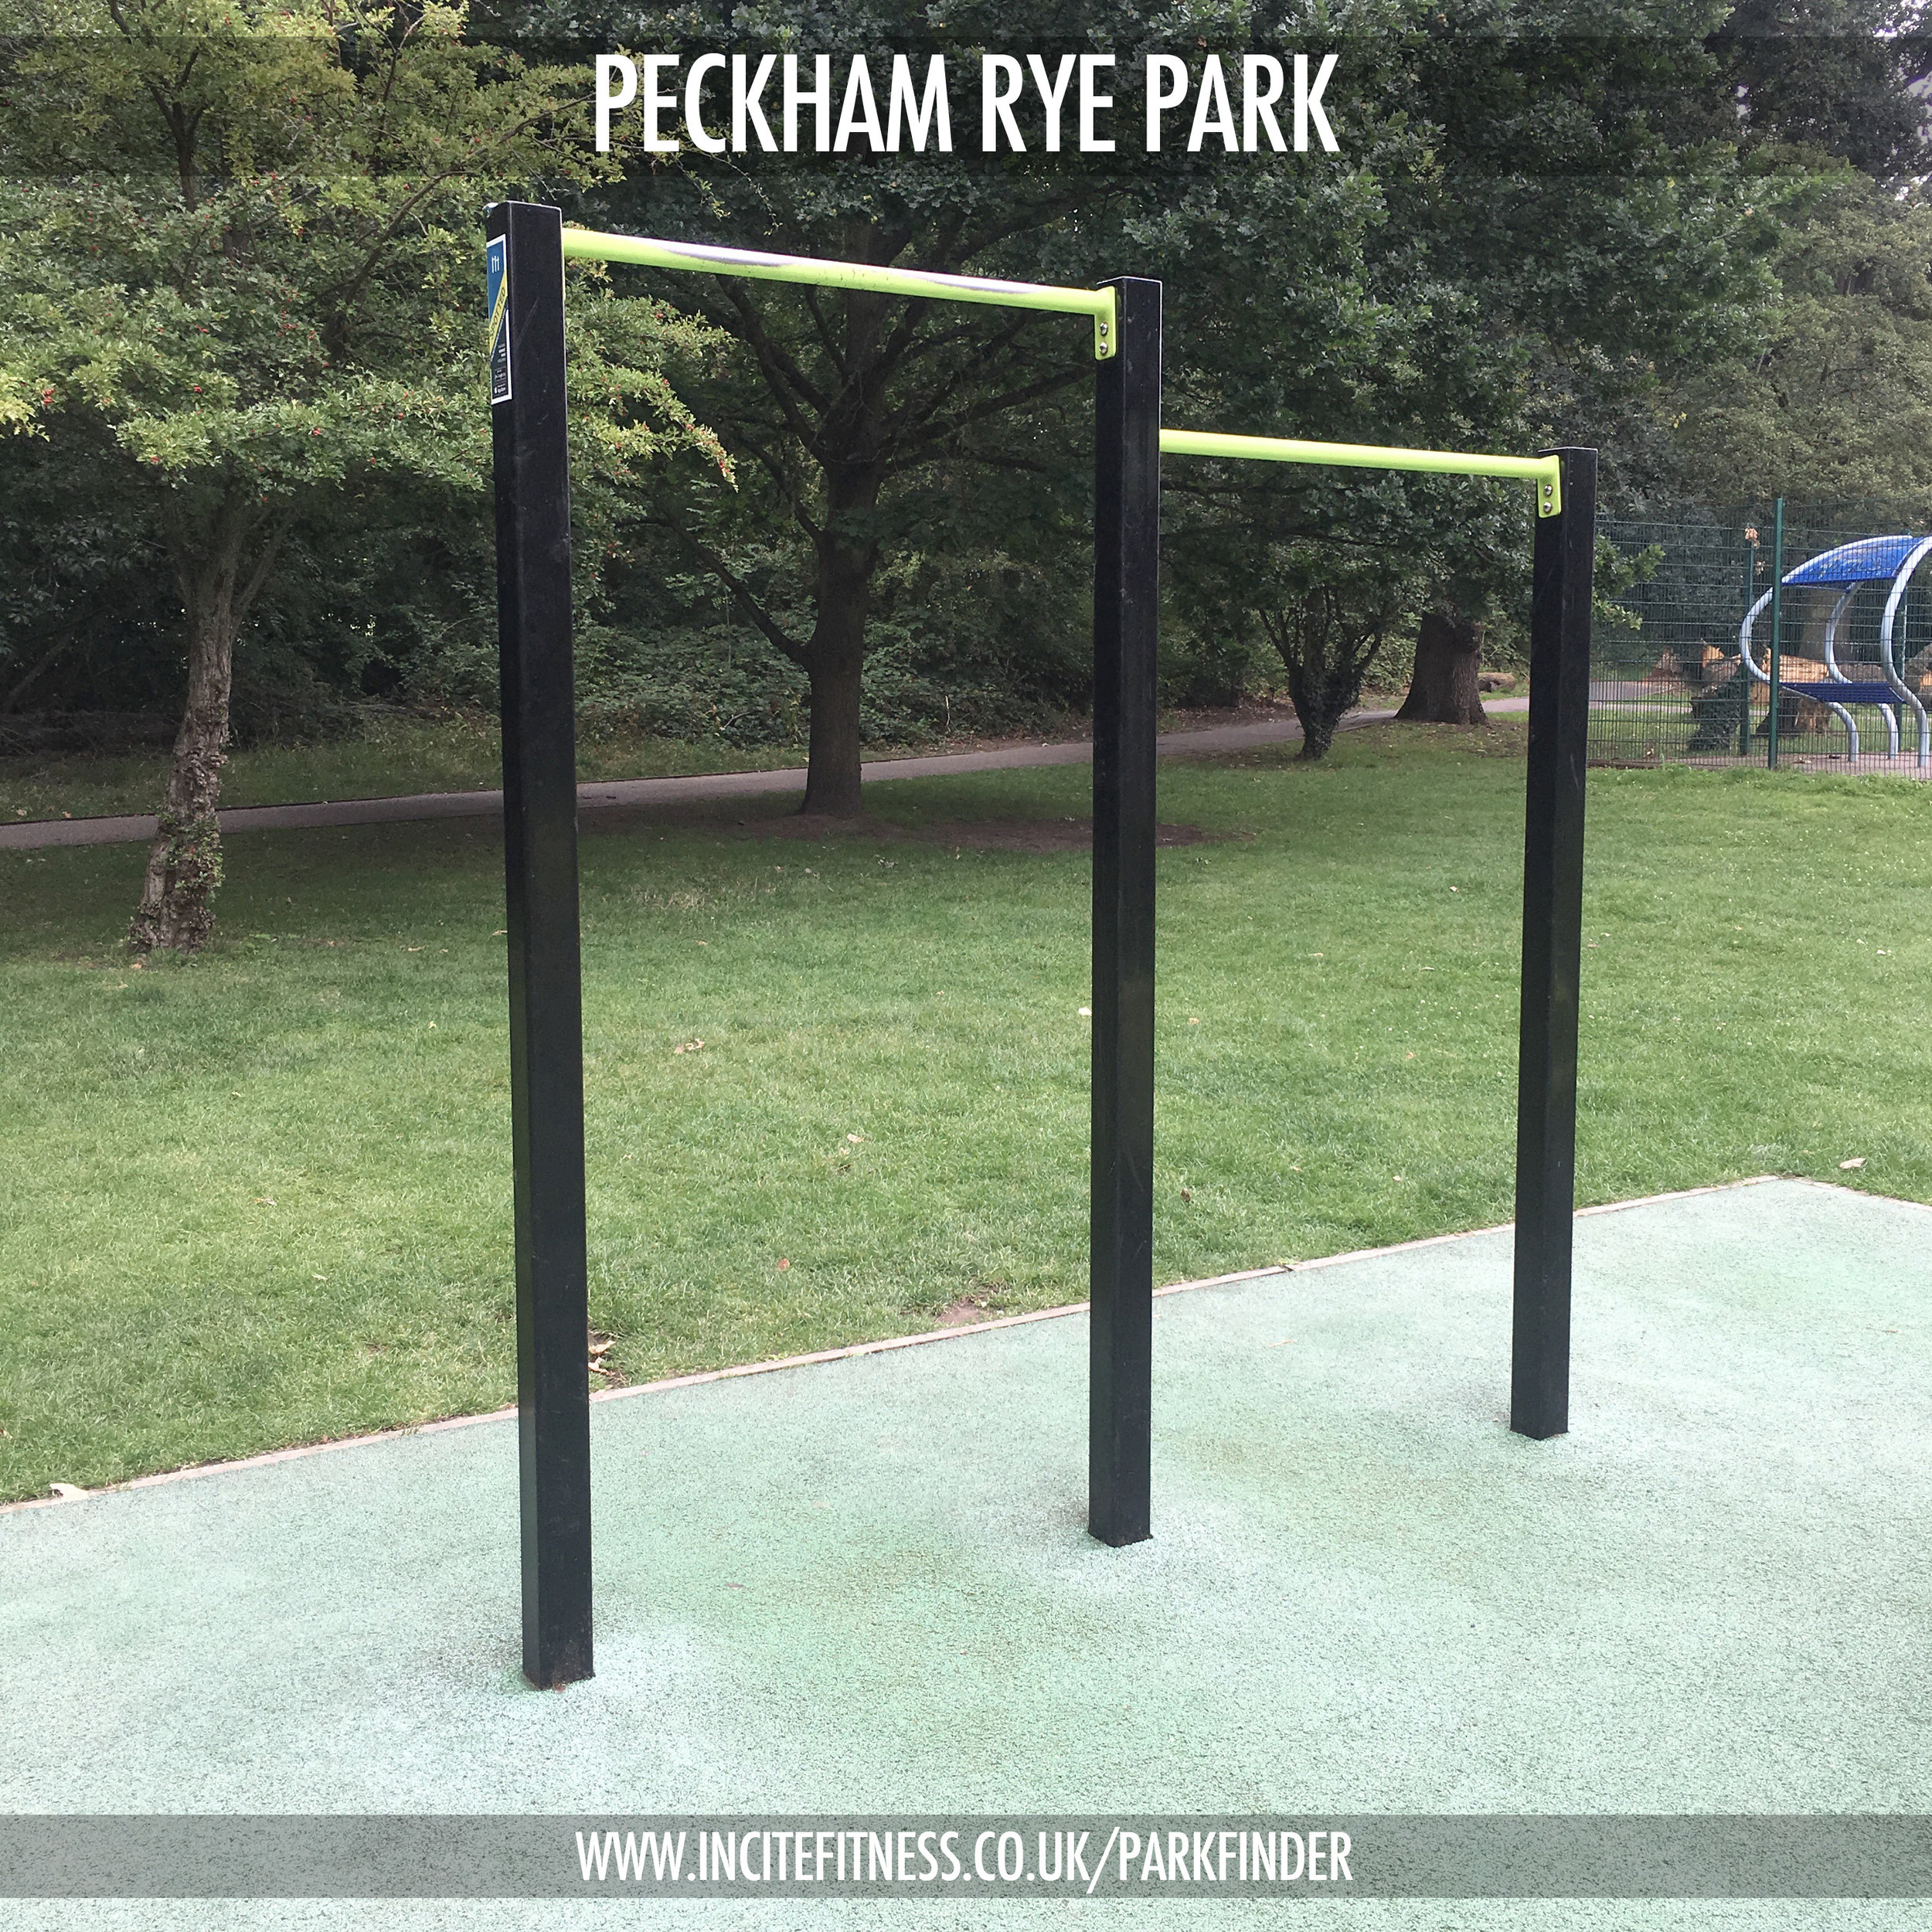 Peckham Rye park 02 pull up bars.jpg